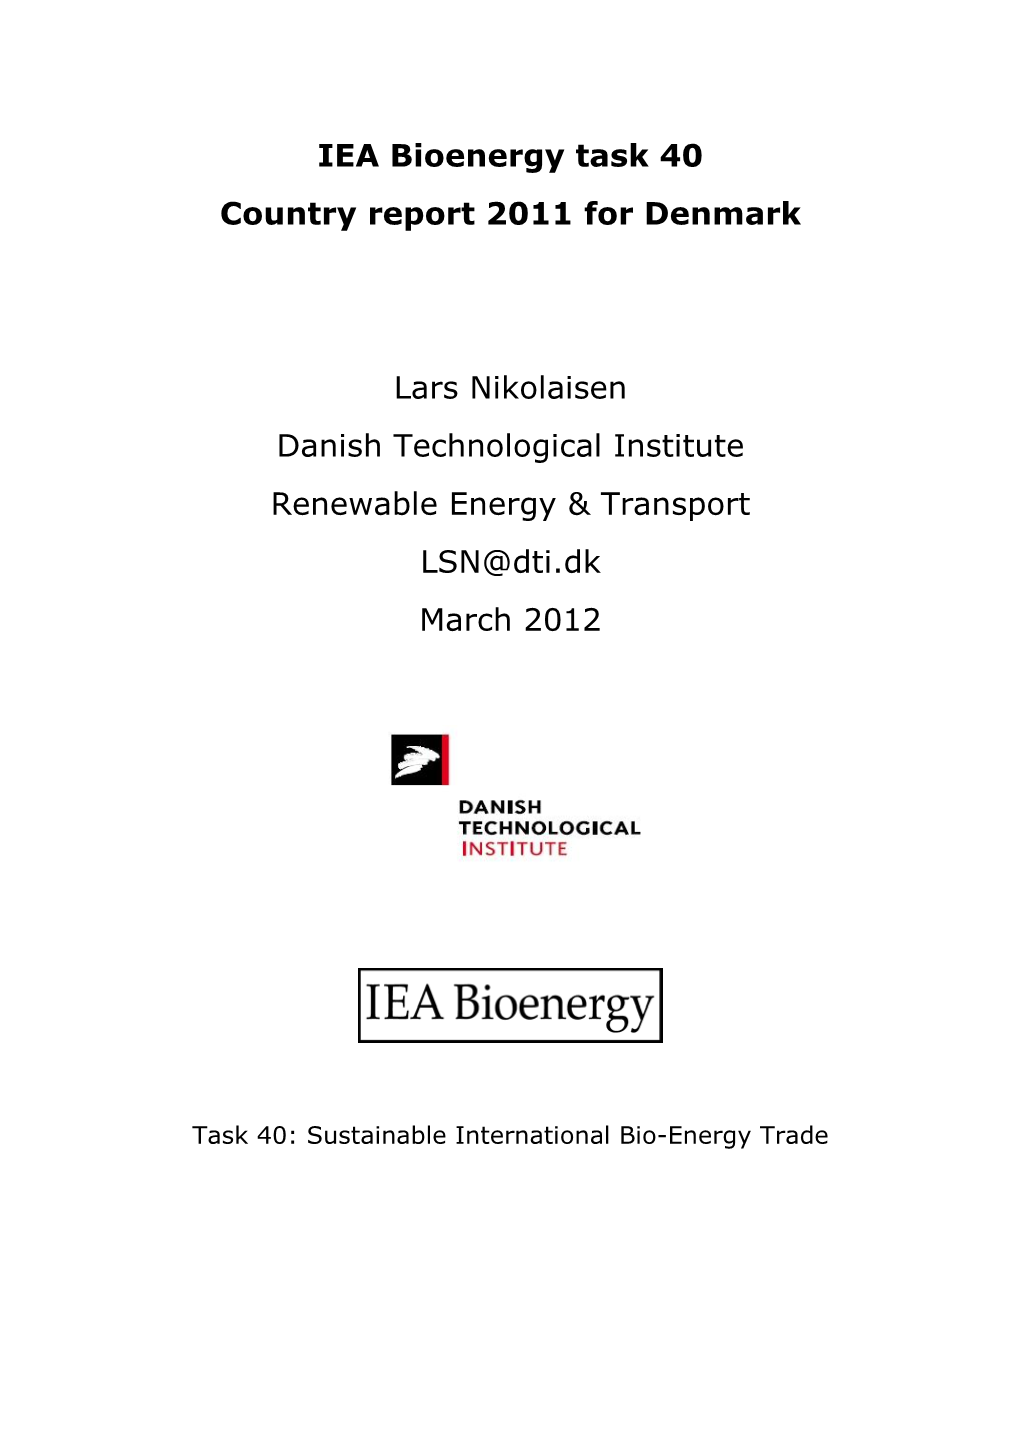 IEA Bioenergy Task 40 Country Report 2011 for Denmark Lars Nikolaisen